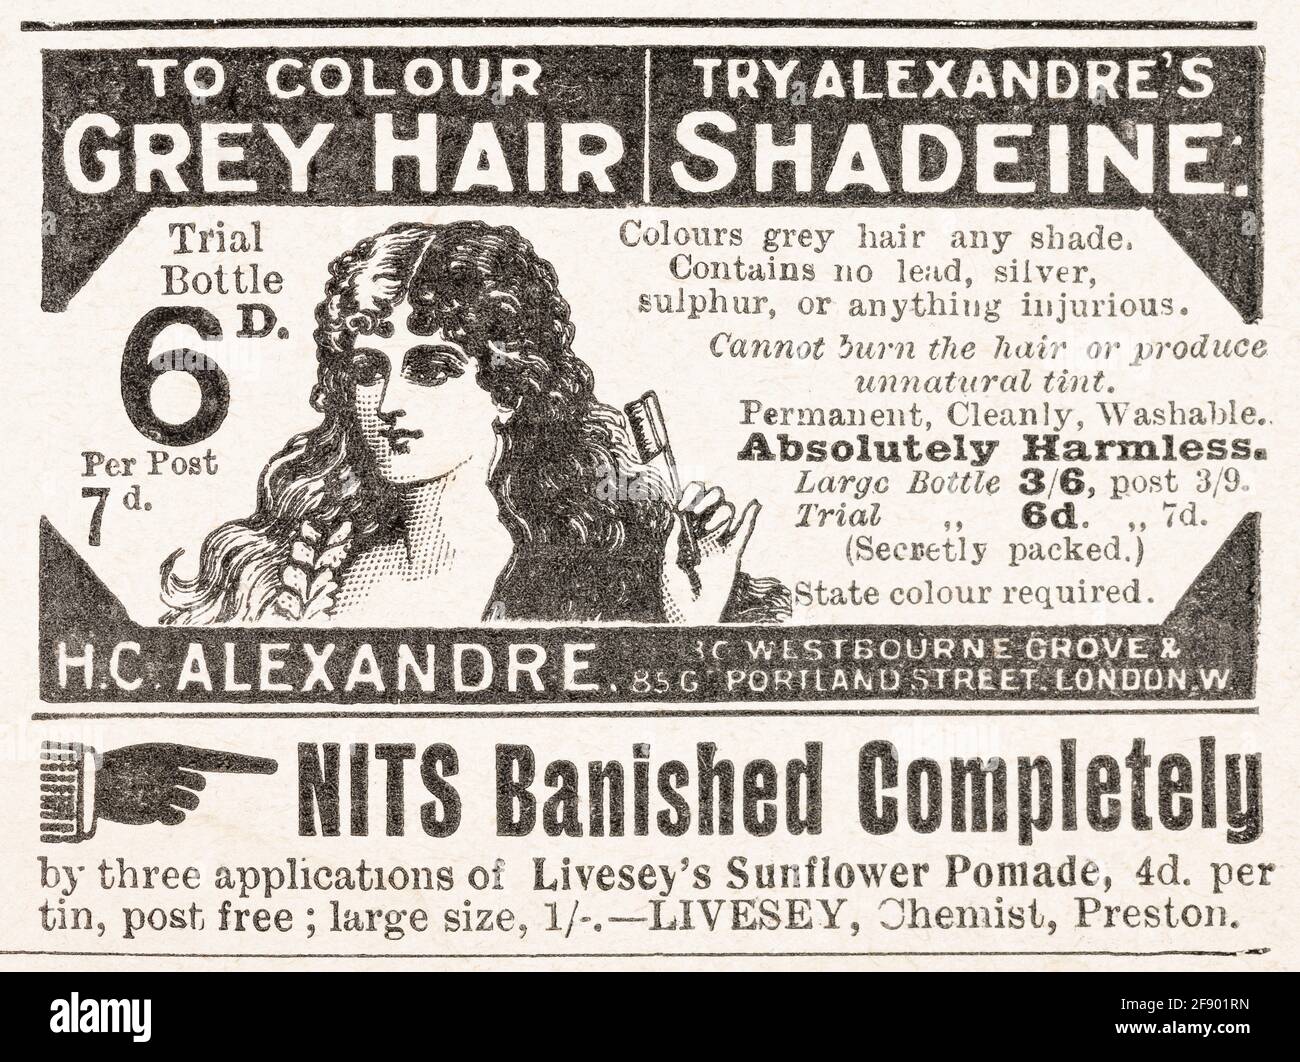 Vecchio annuncio vintage di cura dei capelli / cura dei capelli da epoca vittoriana - 1902 - tempo di standard pre-pubblicità. Vecchi capelli pubblicità, storia di pubblicità. Foto Stock